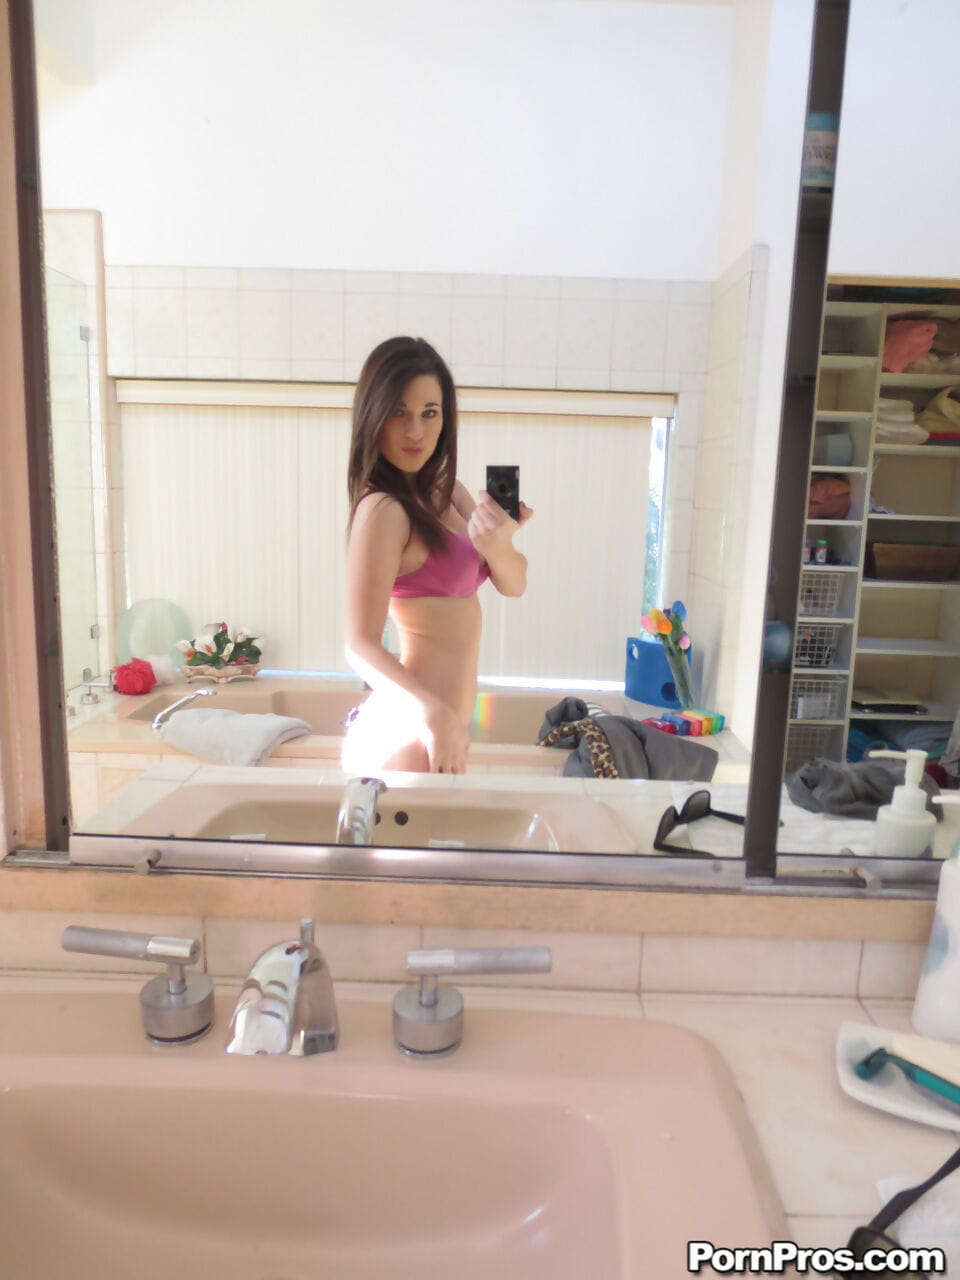 Lacey Channing pyszni jej naturalny cycki dostaje nagie i bierze sexy selfie